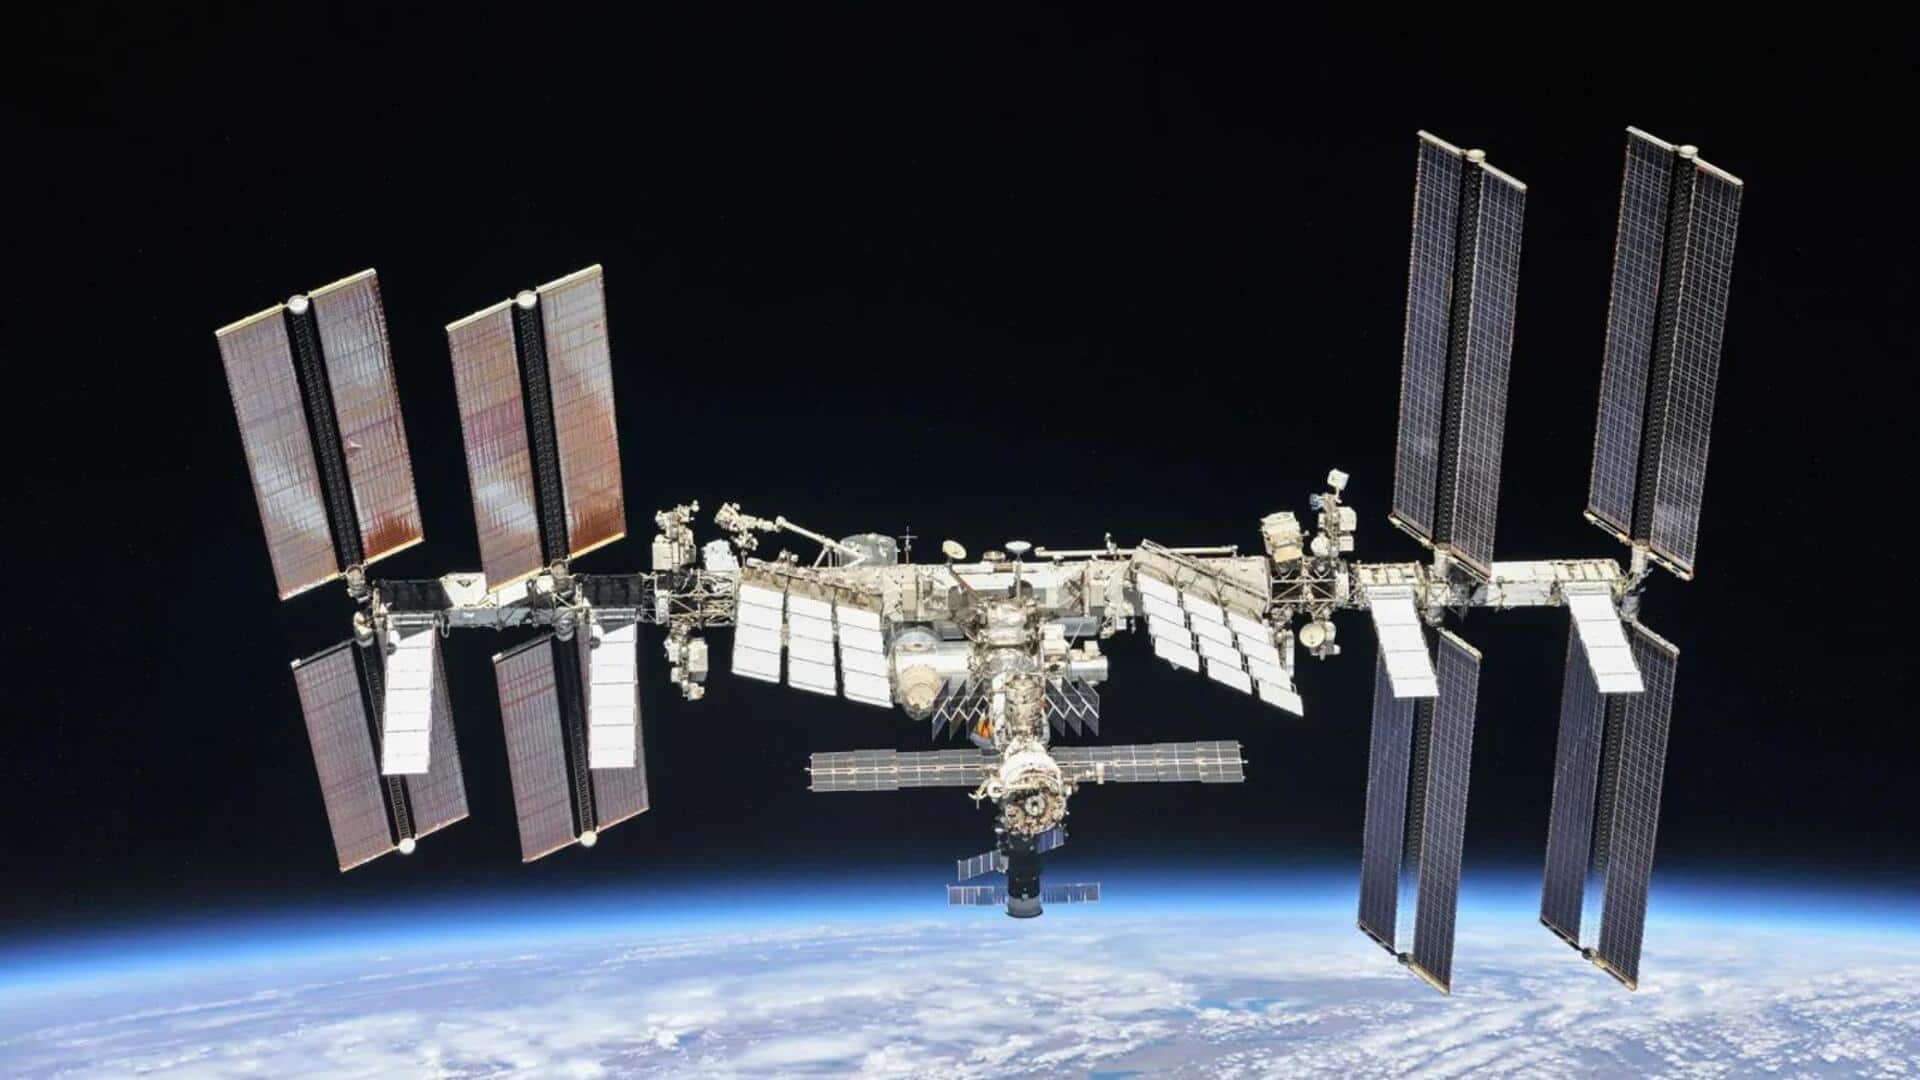 अंतरराष्ट्रीय स्पेस स्टेशन को कैसे तोड़ा जाएगा? नासा ने बताई अपनी योजना